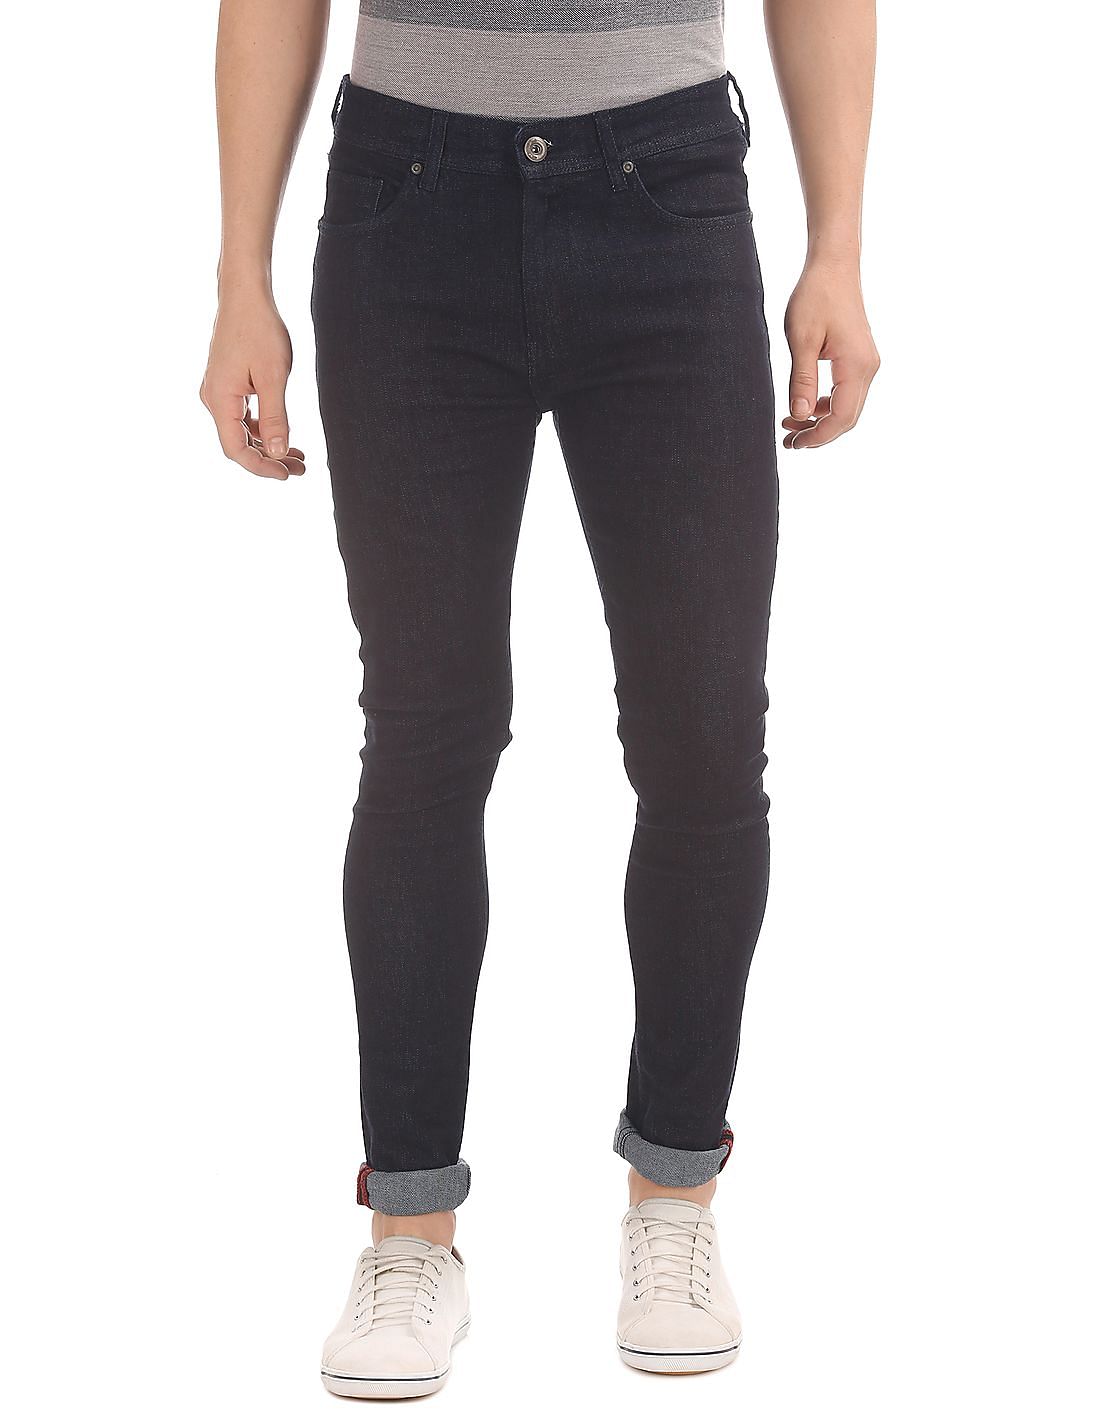 Buy Colt Low Rise Slim Fit Jeans - NNNOW.com